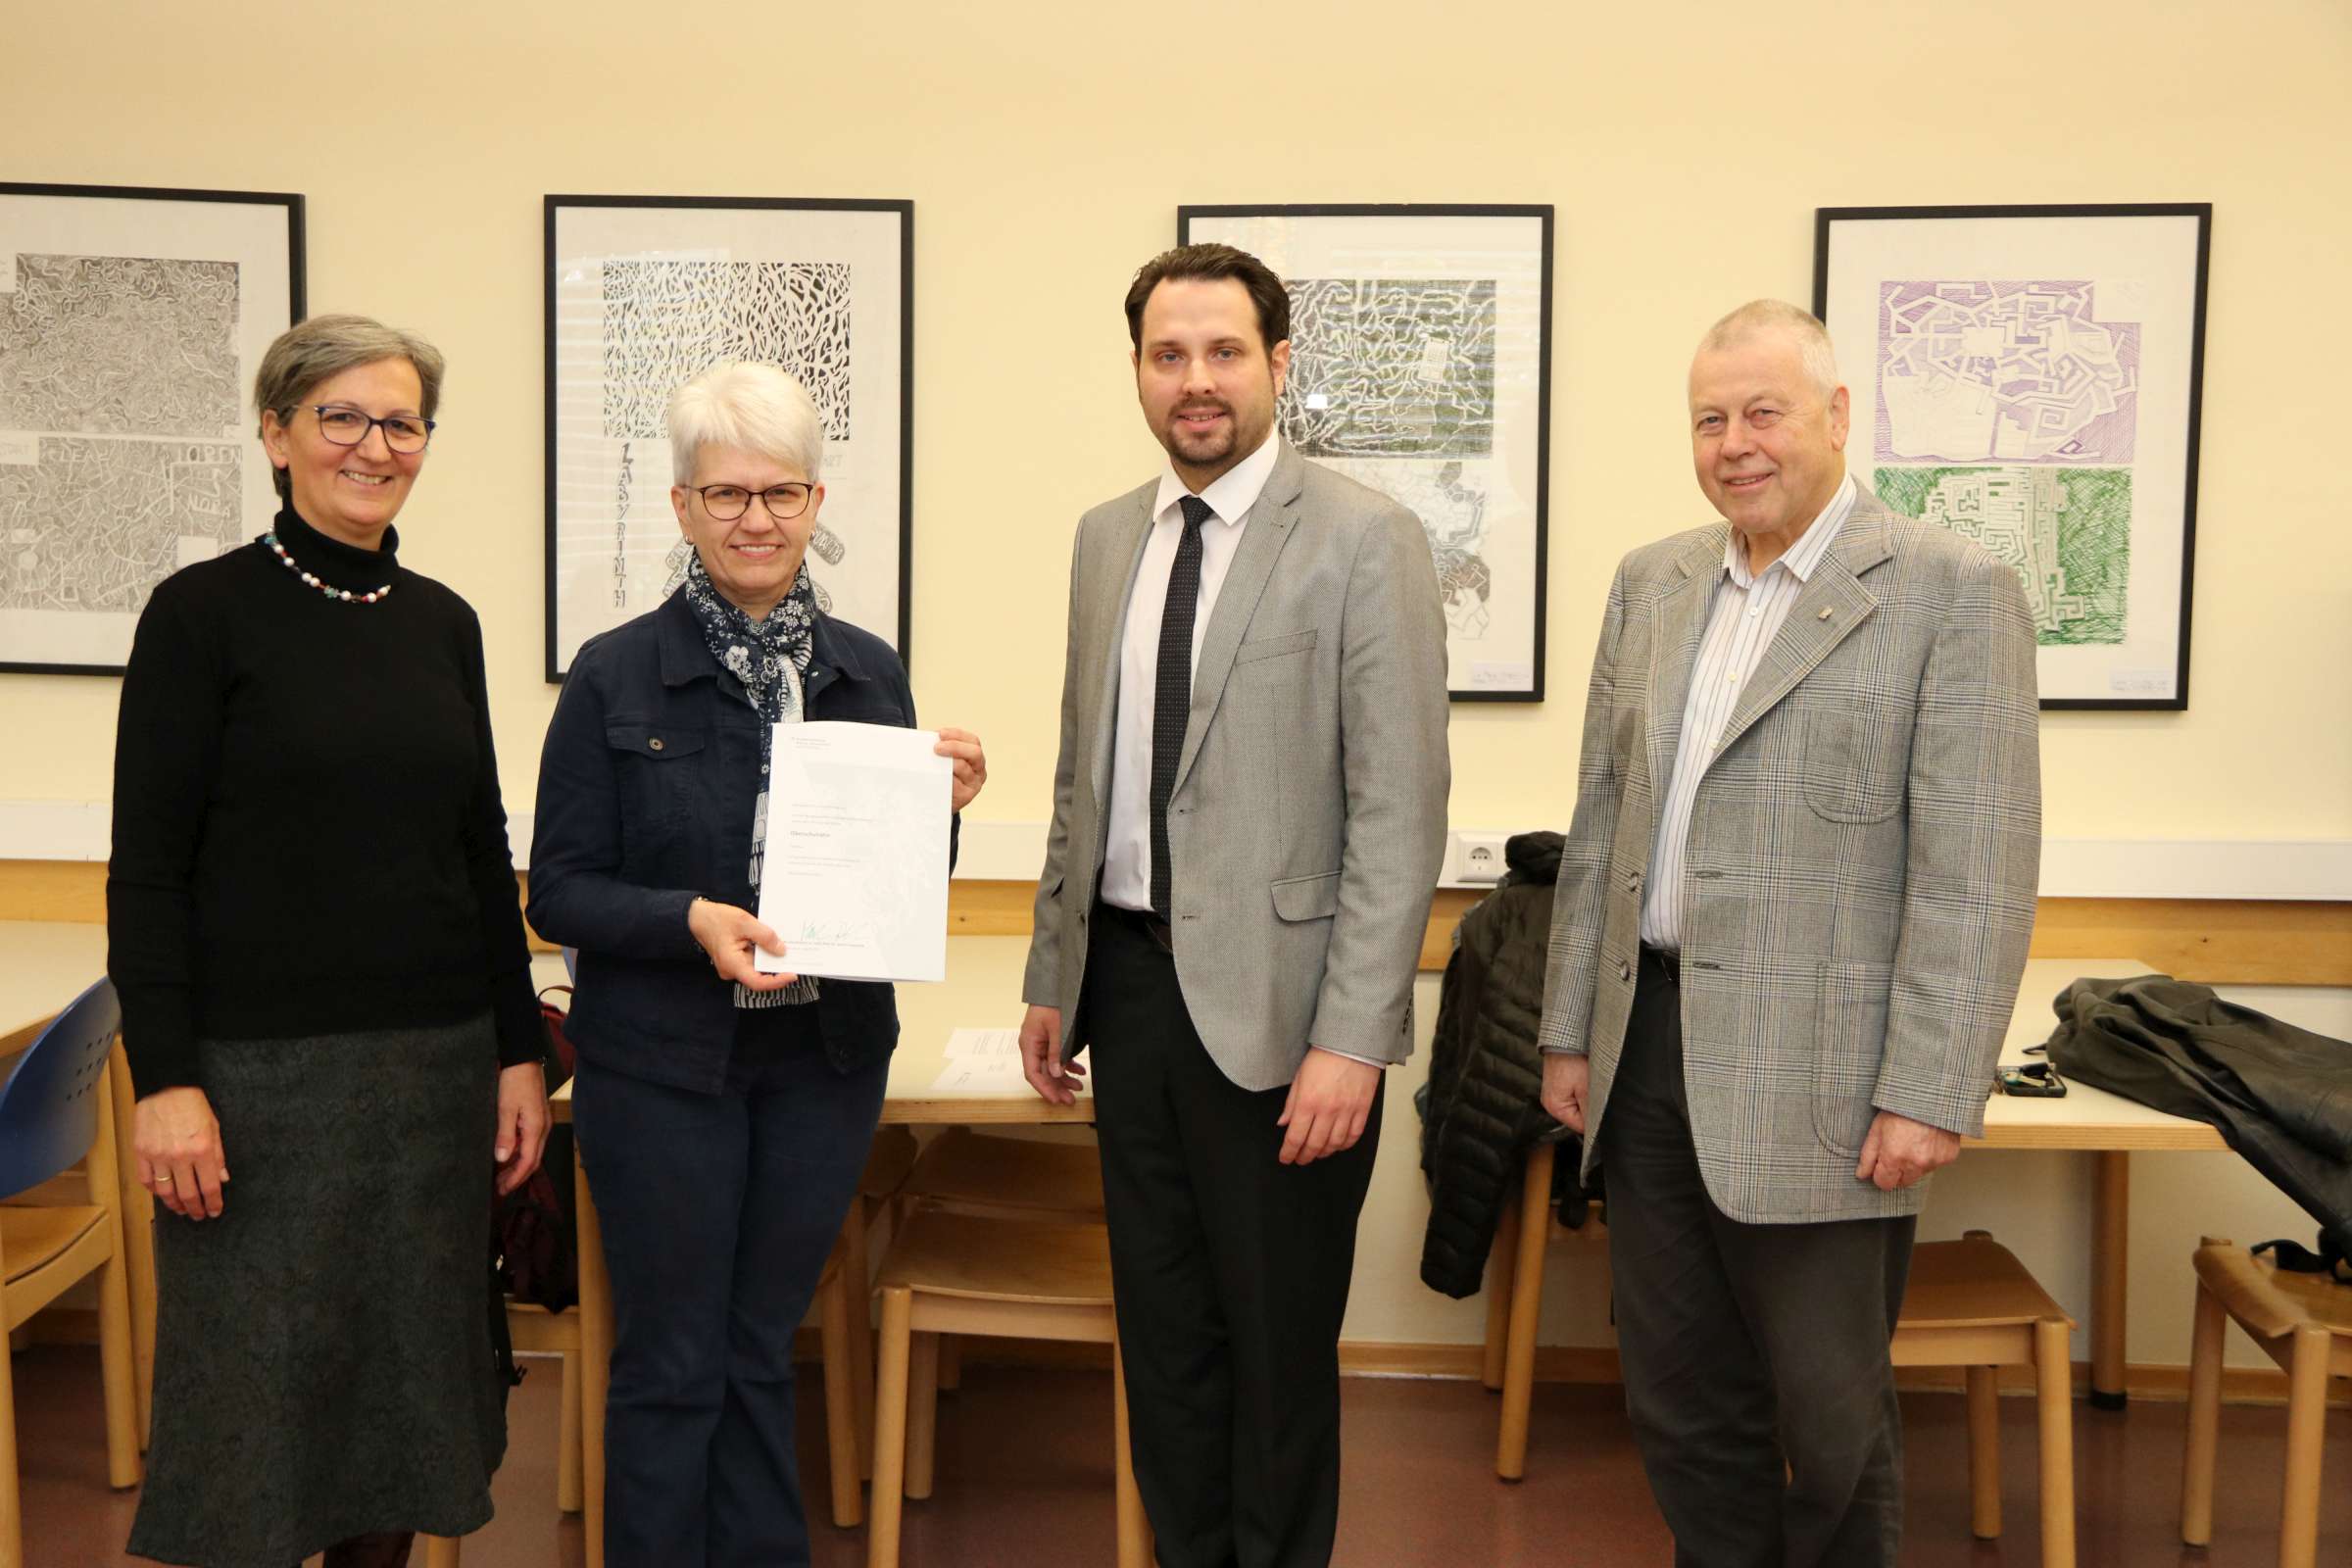 Hohe Auszeichnung für Frau Oberschulrätin Julianna Gold am Don Bosco-Gymnasium Unterwaltersdorf